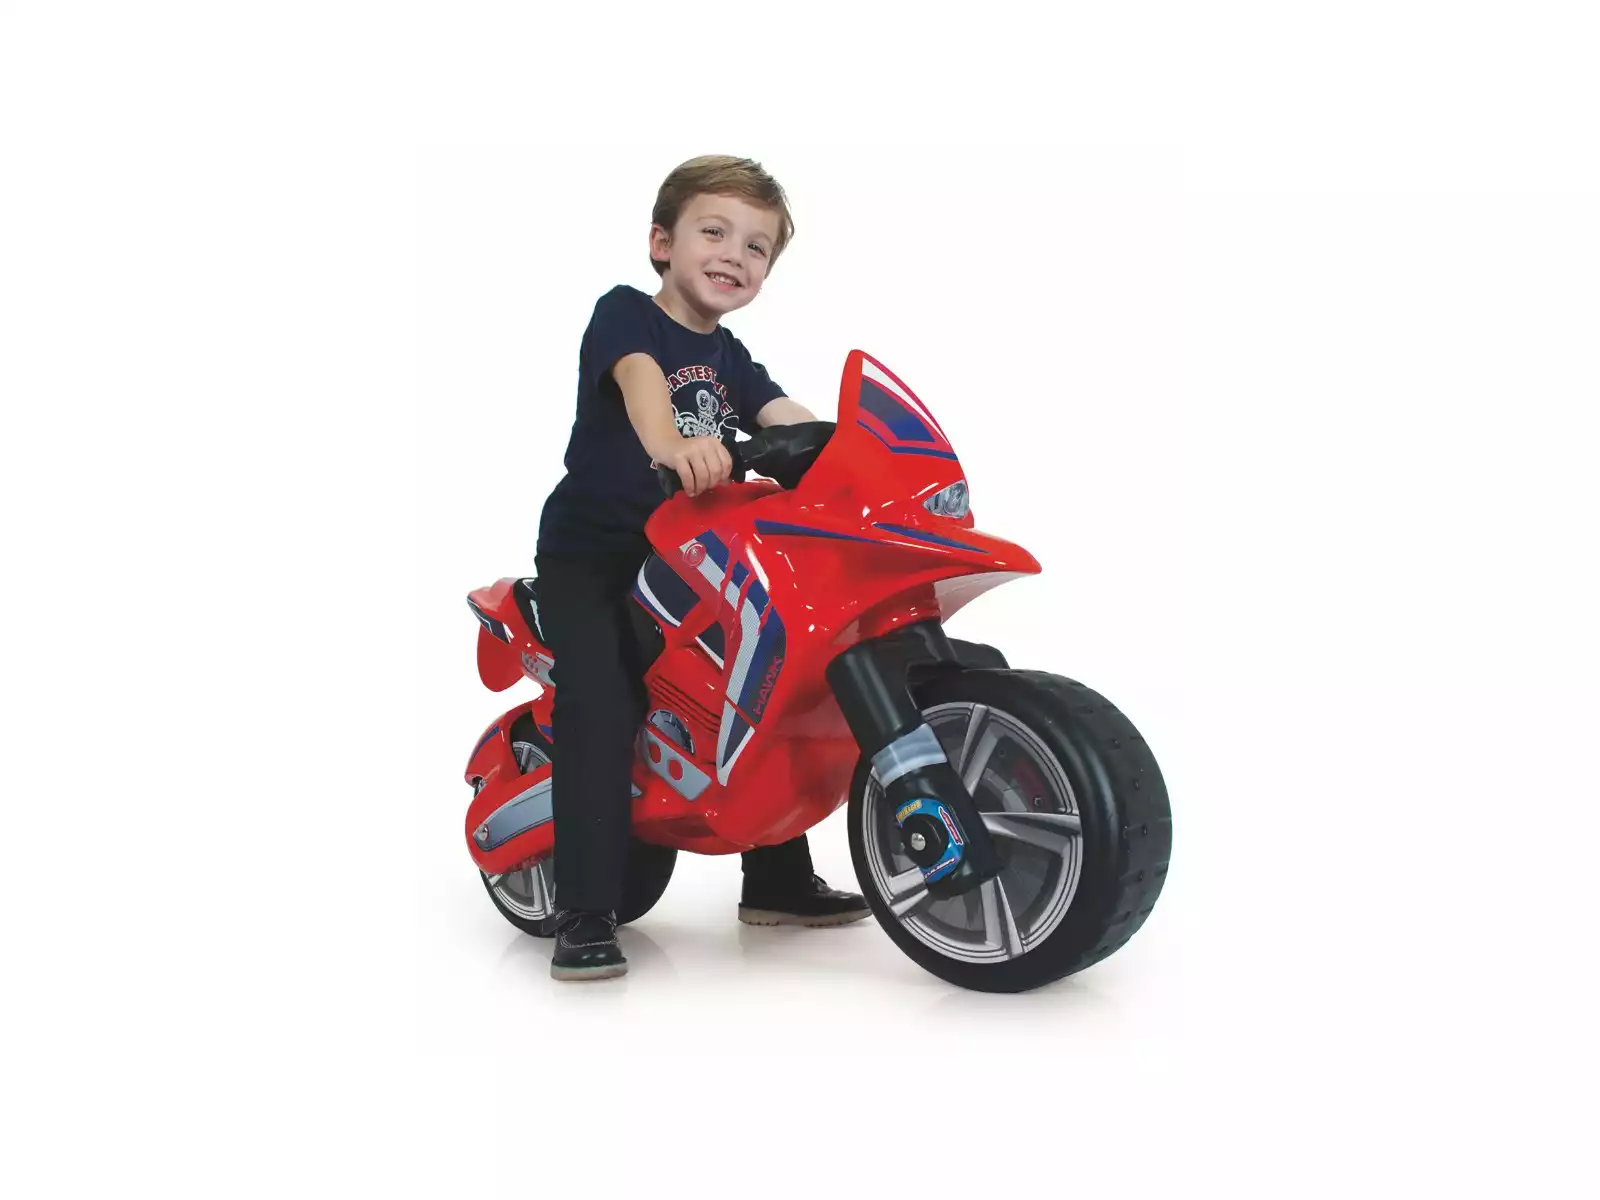 Chicos - Correpasillos Mini Custom con Cuatro Ruedas para Mayor Estabilidad, Bicicleta de Equilibrio Bebe a Partir de 10 Meses, Moto Juguete Bebe 1 año